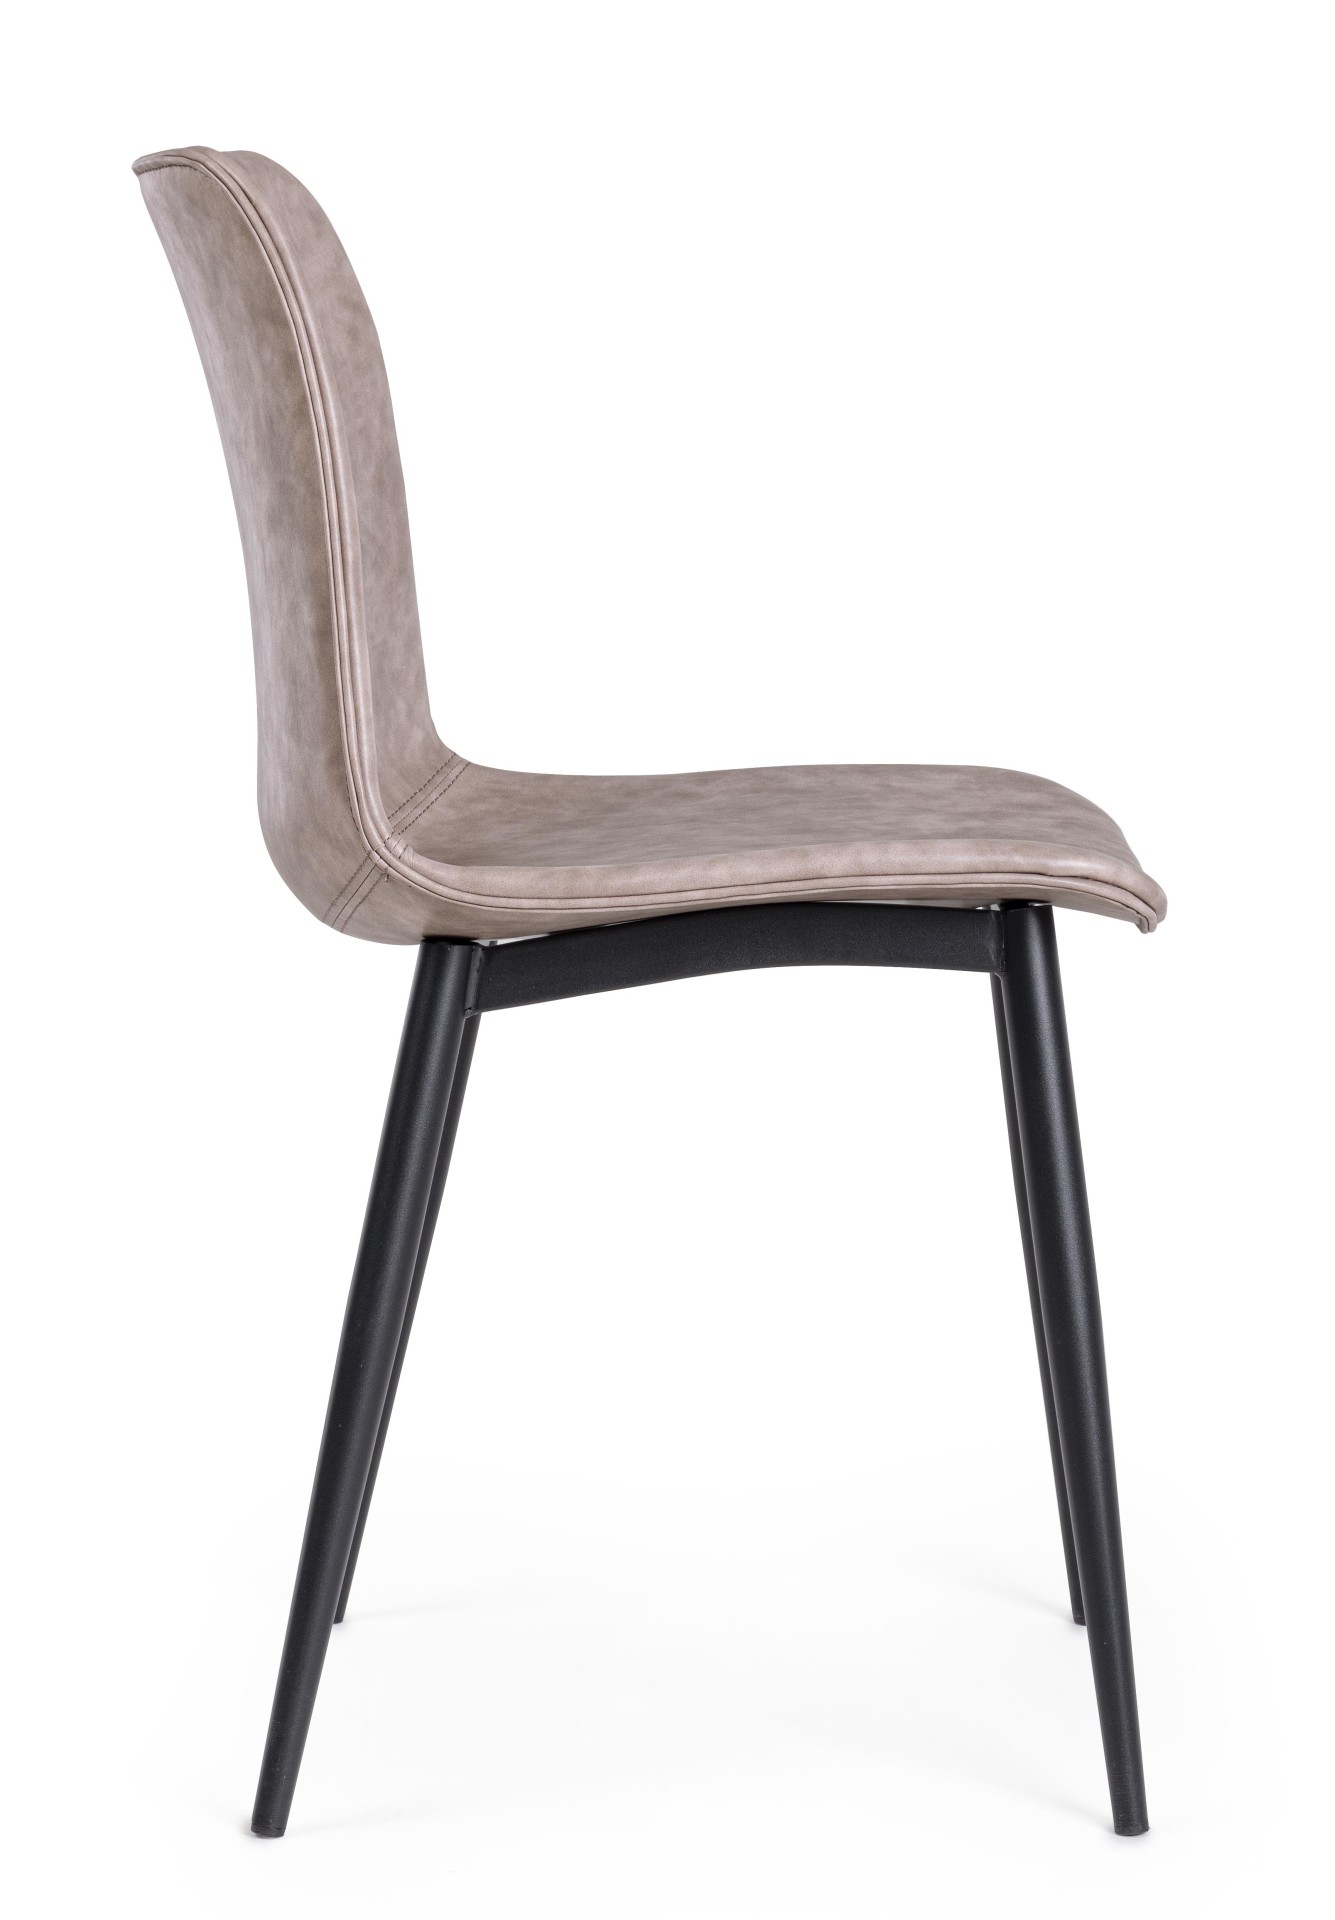 Der Esszimmerstuhl Kyra überzeugt mit seinem modernen Design. Gefertigt wurde der Stuhl aus Kunstleder, welcher einen Beige Farbton besitzt. Das Gestell ist aus Metall und ist Schwarz. Die Sitzhöhe beträgt 44 cm.